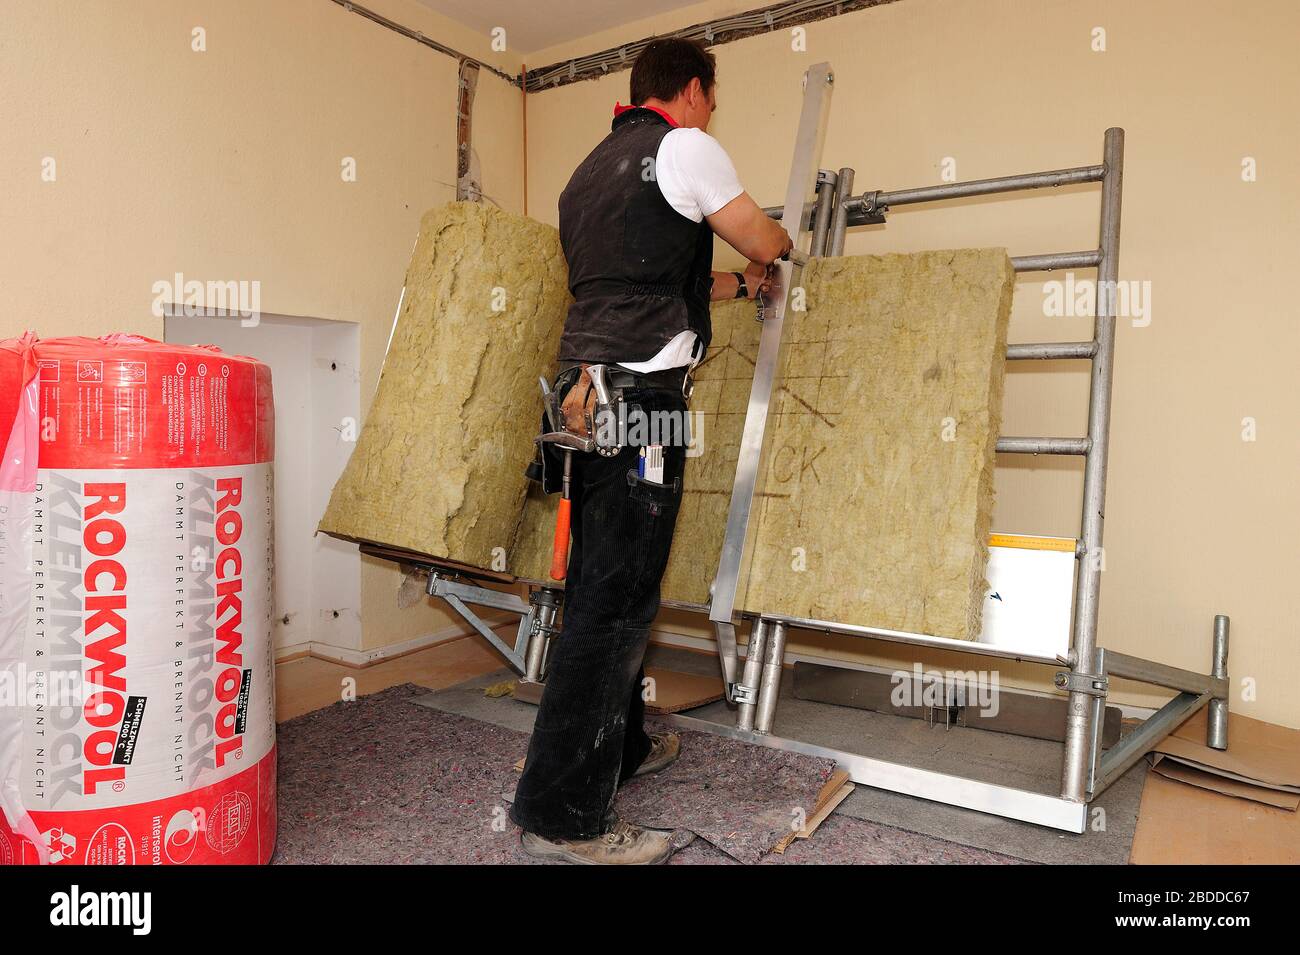 07.05.2013, Bottrop, Nordrhein-Westfalen, Deutschland - energetische Sanierung eines Einfamilienhauses mit dem Ziel, das gesamte Haus zu modernisieren Stockfoto